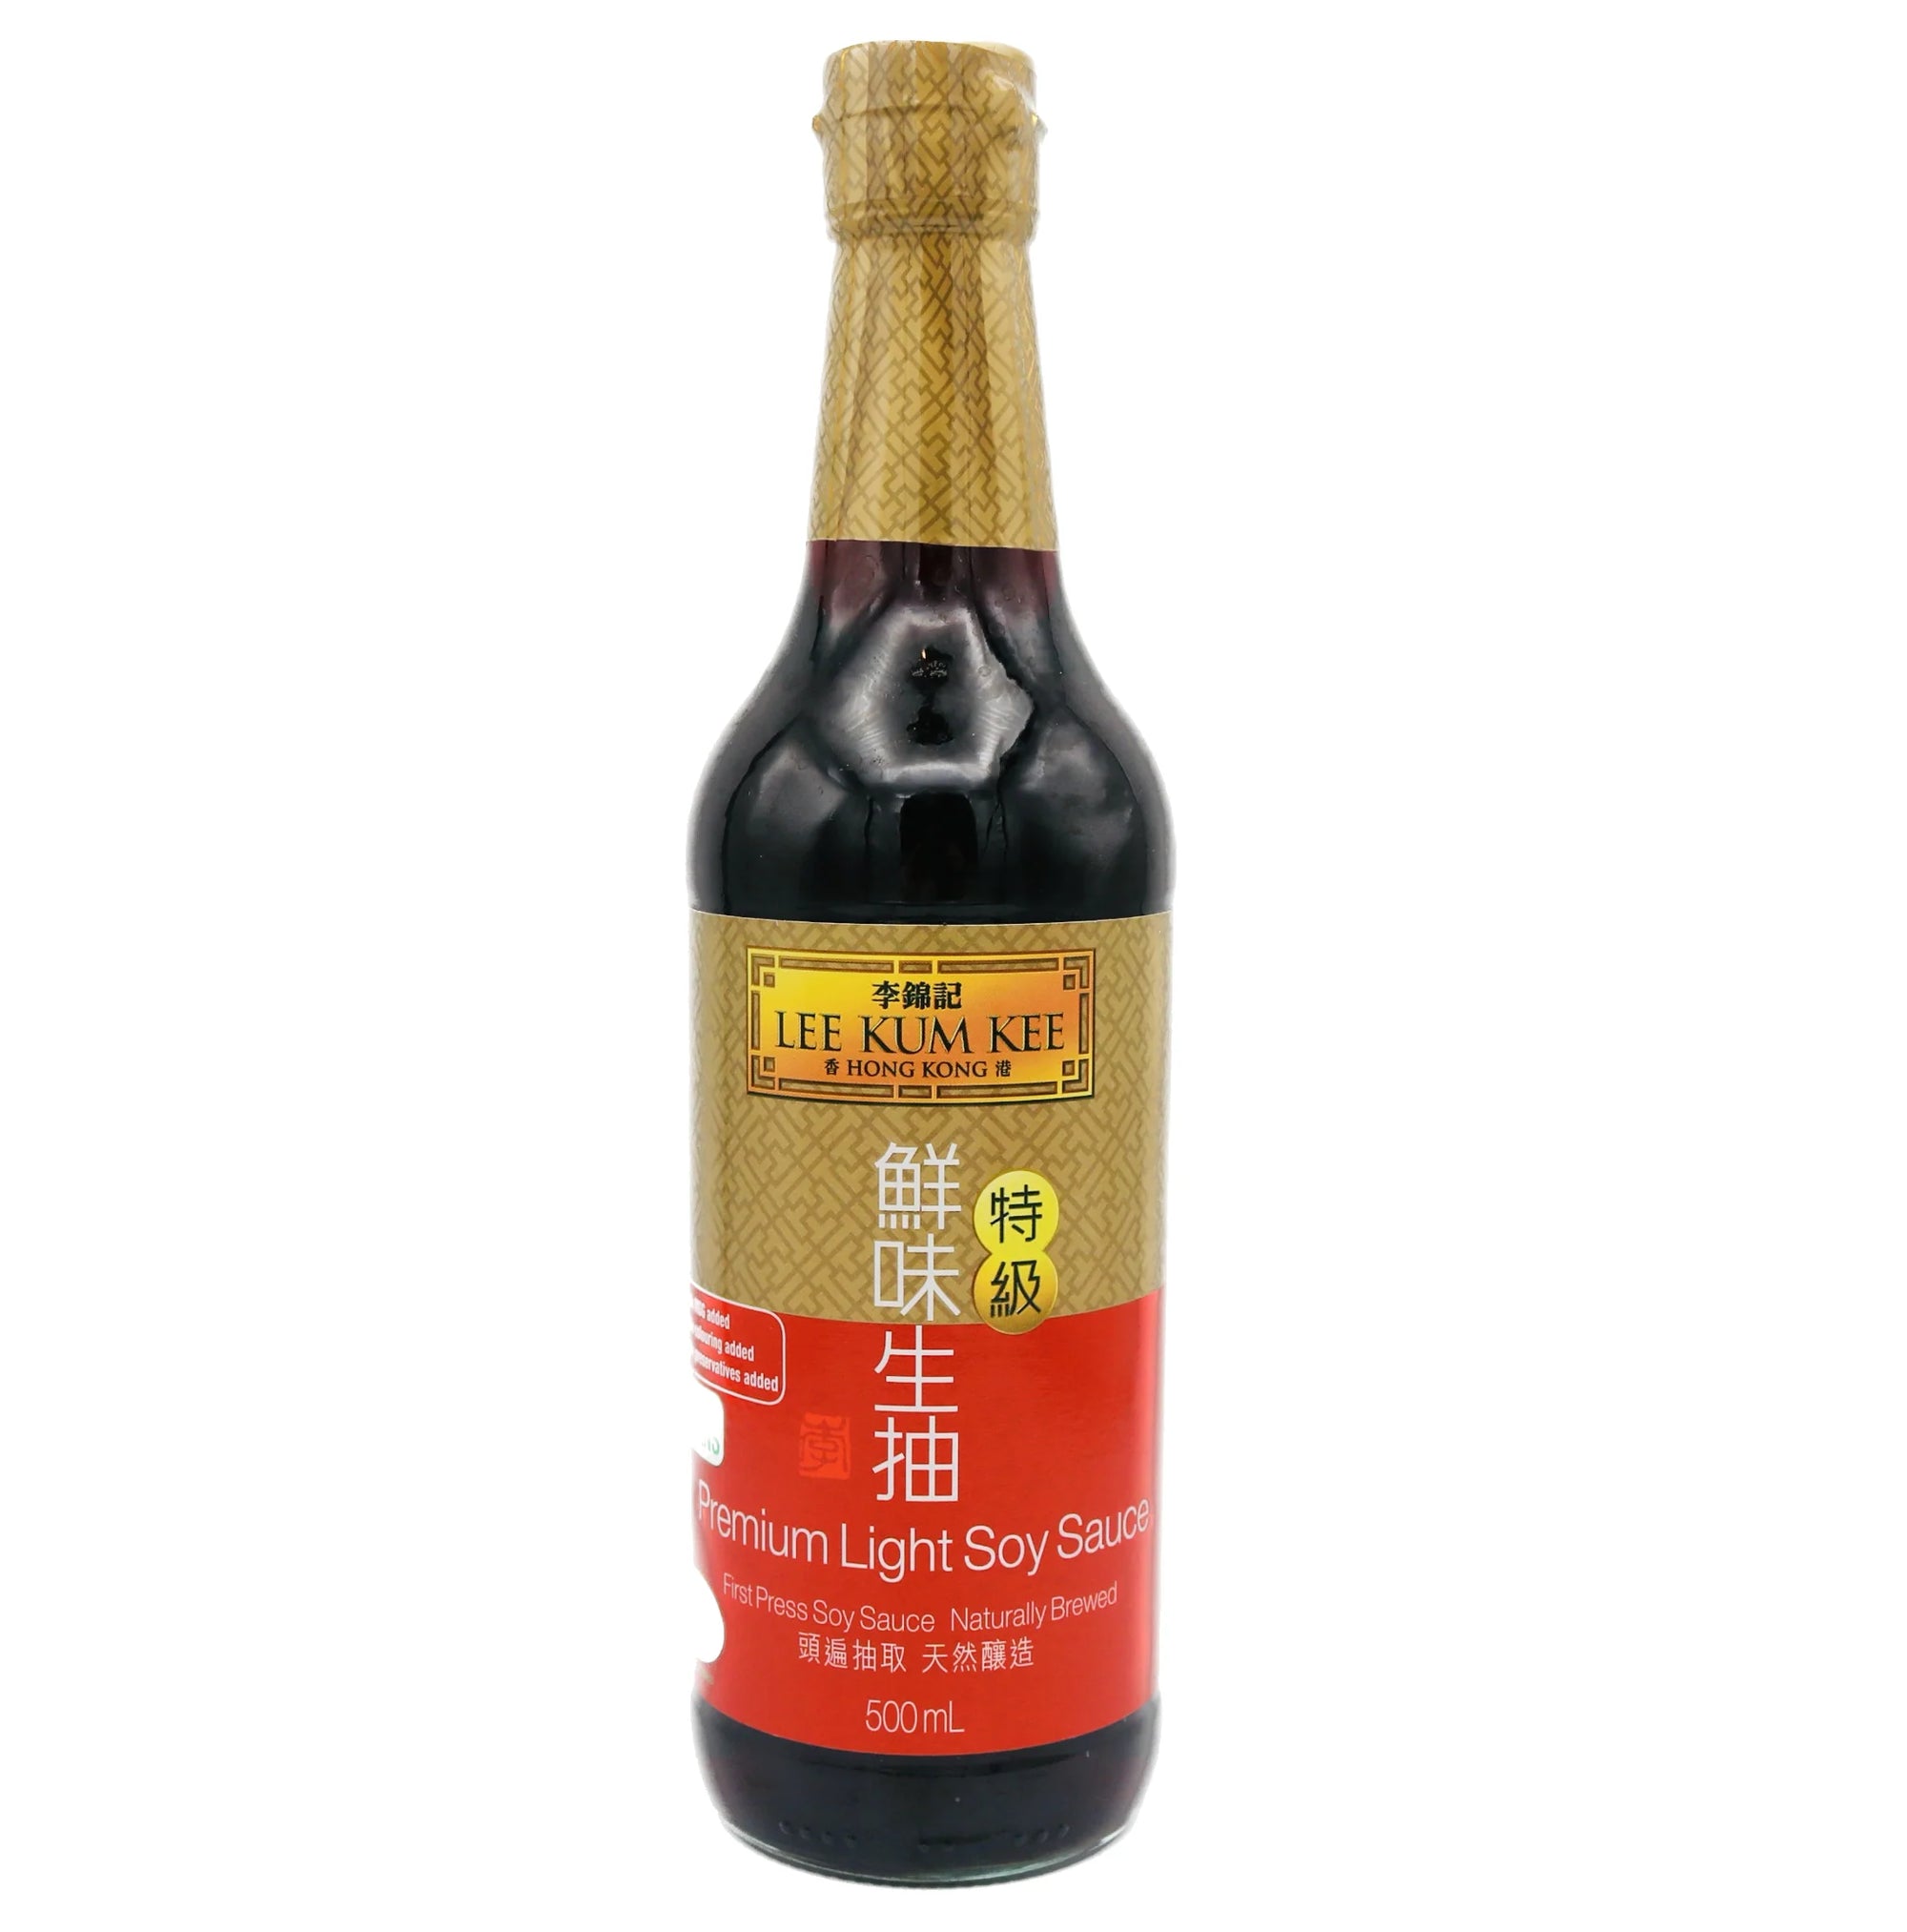 Lee Kum Kee Premium Light Soy Sauce 李錦記 特級鮮味生抽 500ml - Tuk Tuk Mart